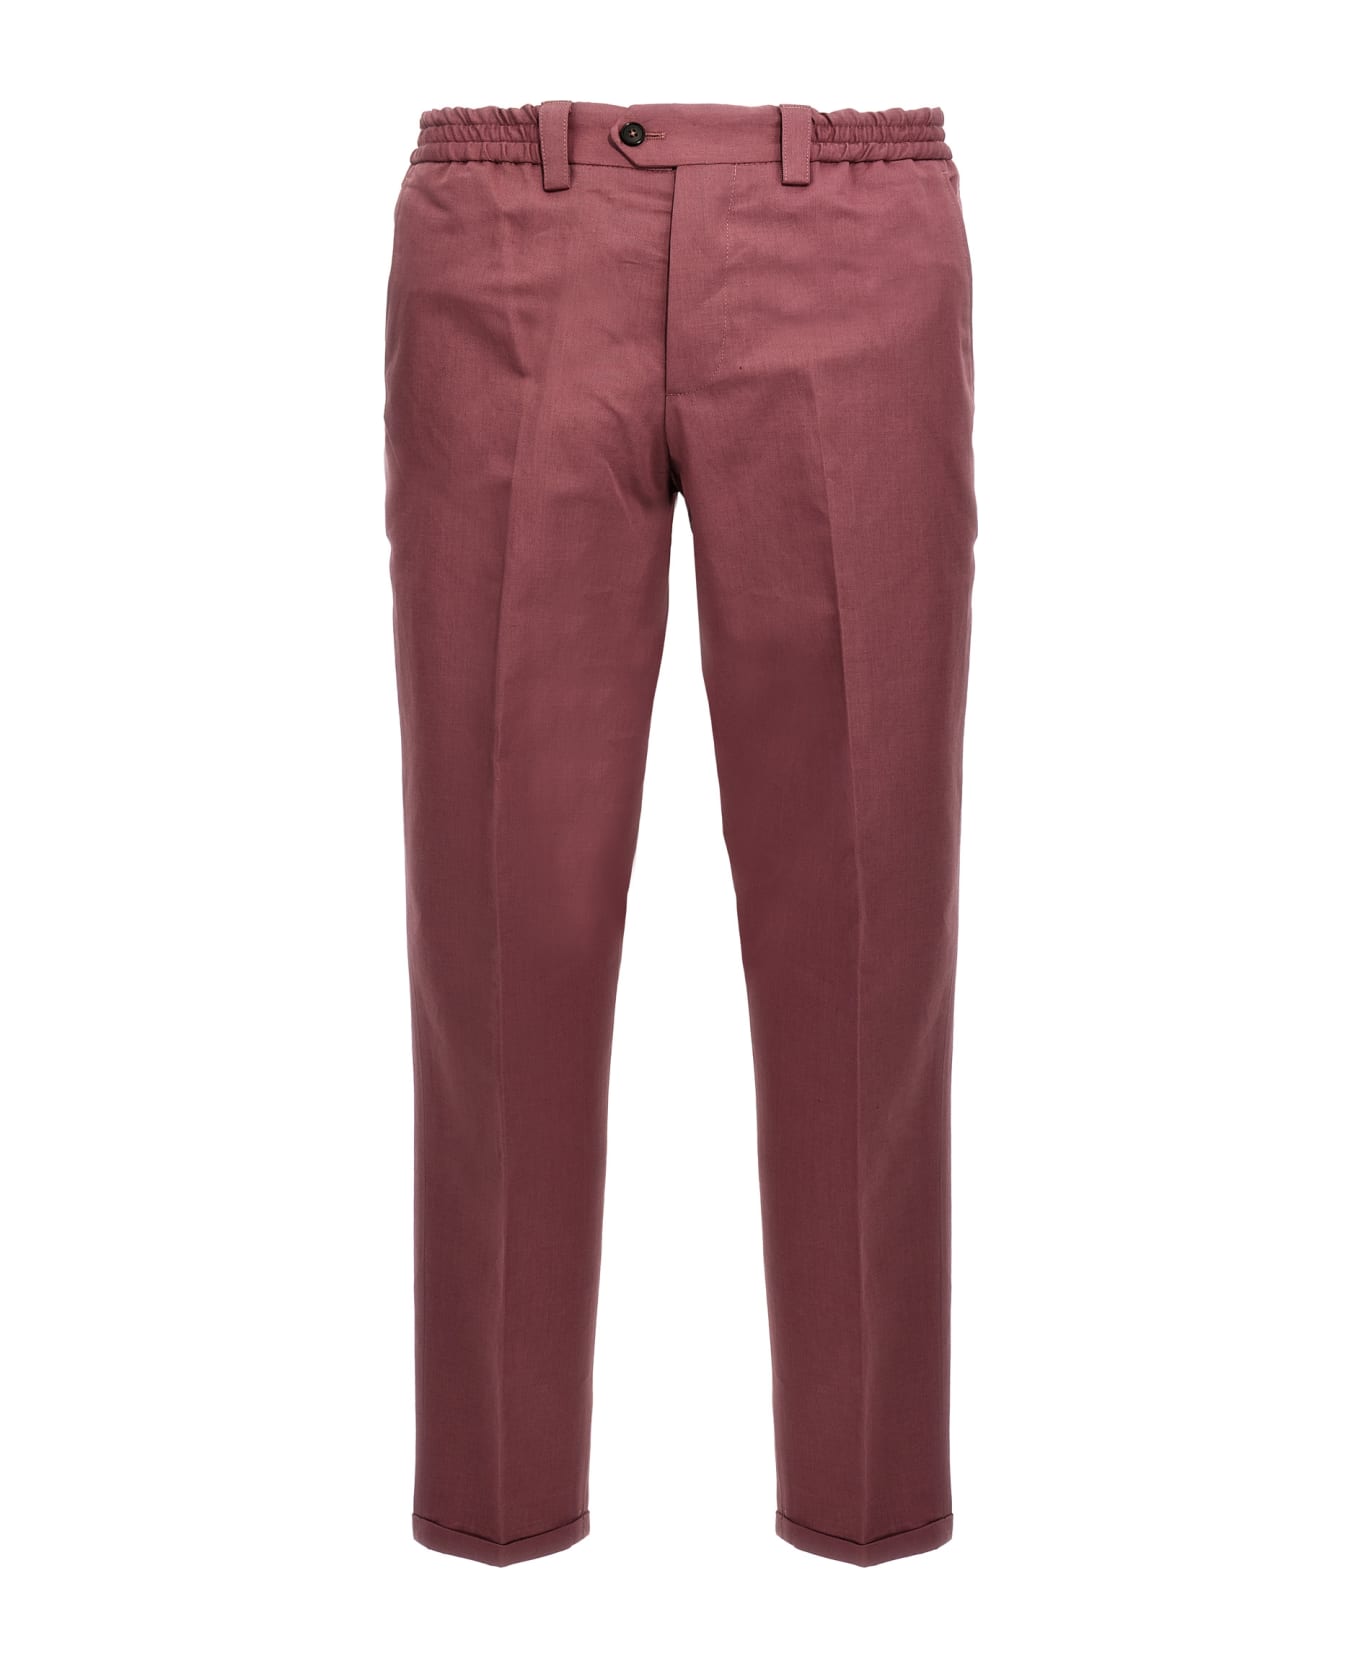 PT Torino 'the Rebel' Pants - Pink ボトムス